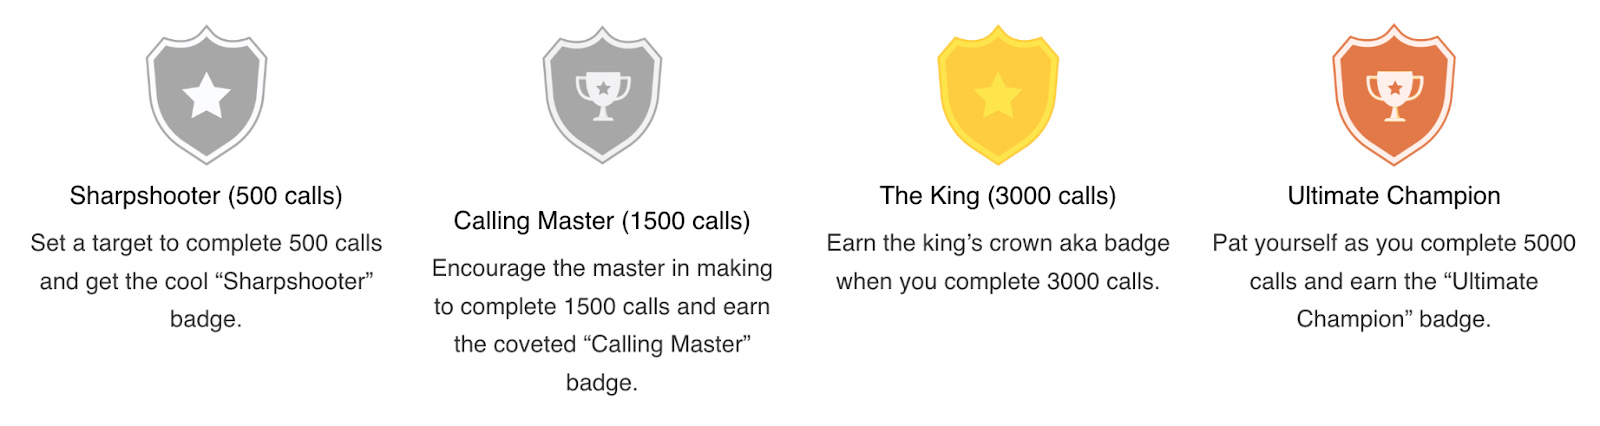 通过CallHippo的游戏化功能奖励给代理的不同类型的徽章。